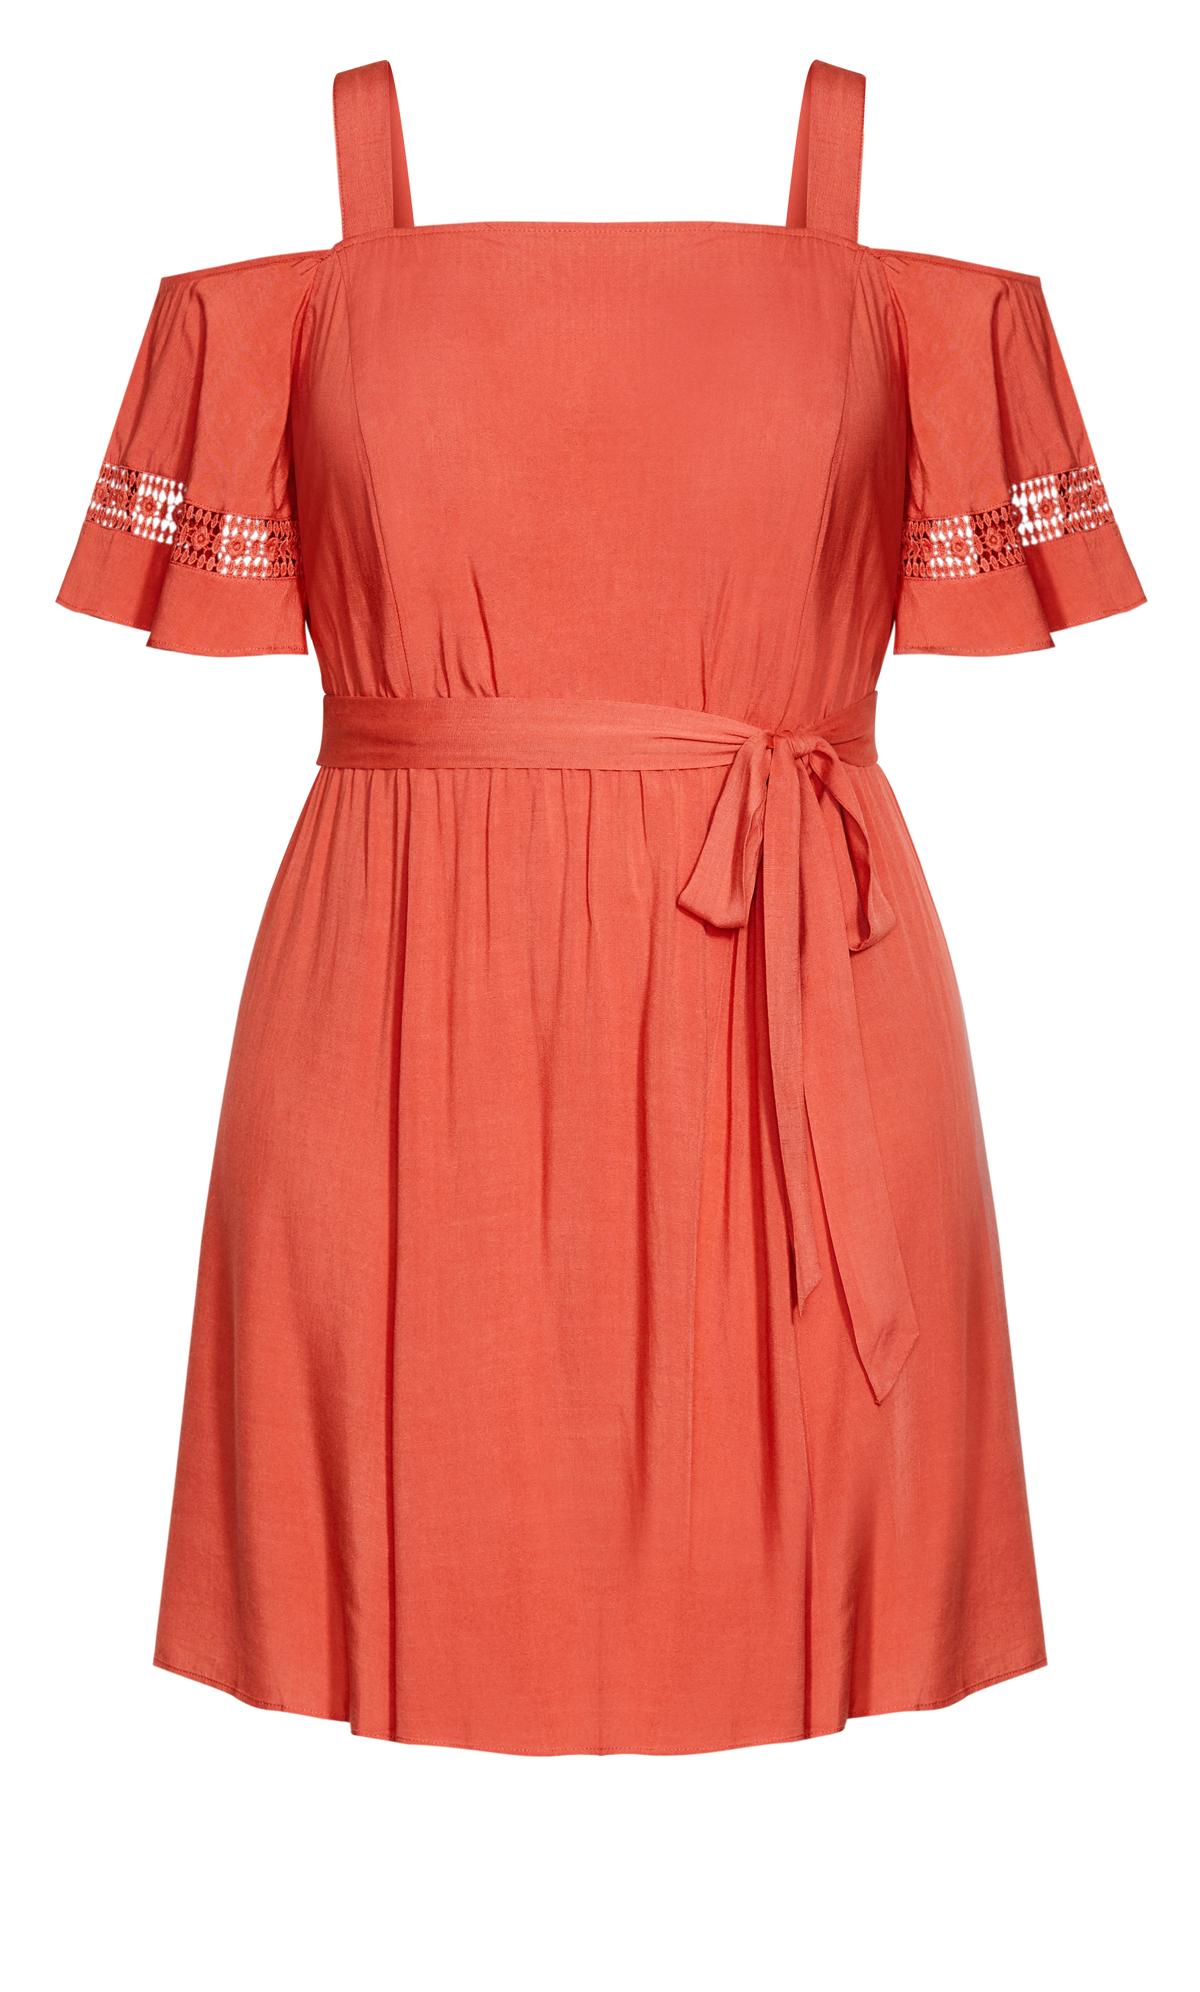 Evans Orange Trim Shoulder Dress 3